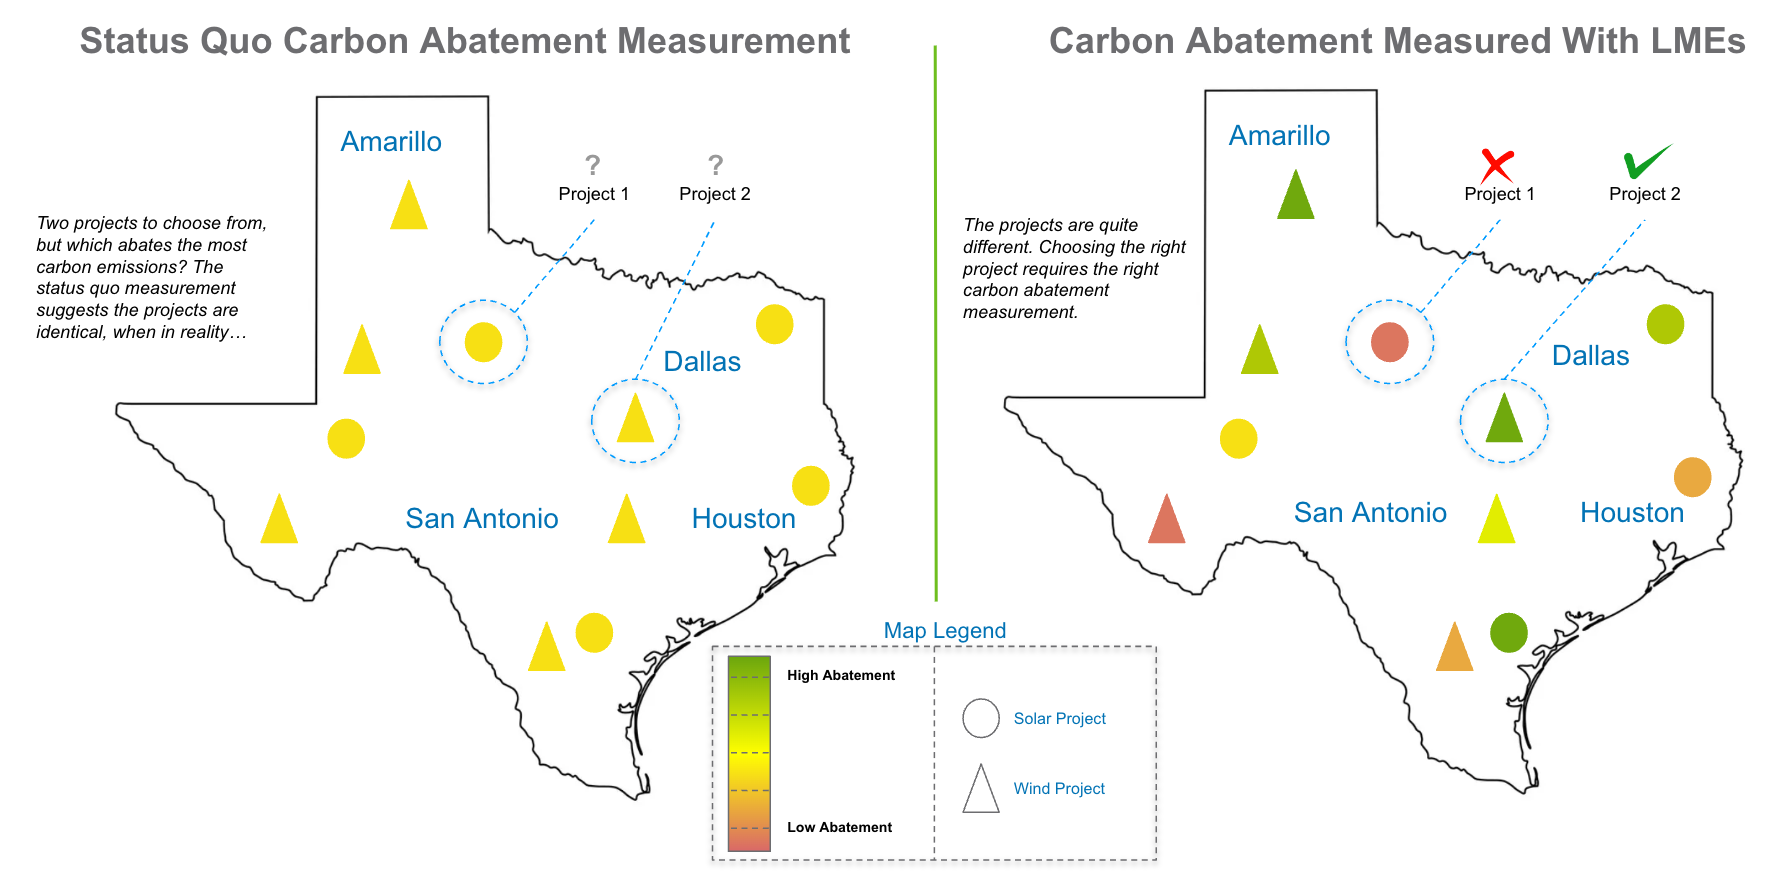 Image comparing status quo versus carbon abatement measured with Locational Marginal Emissions